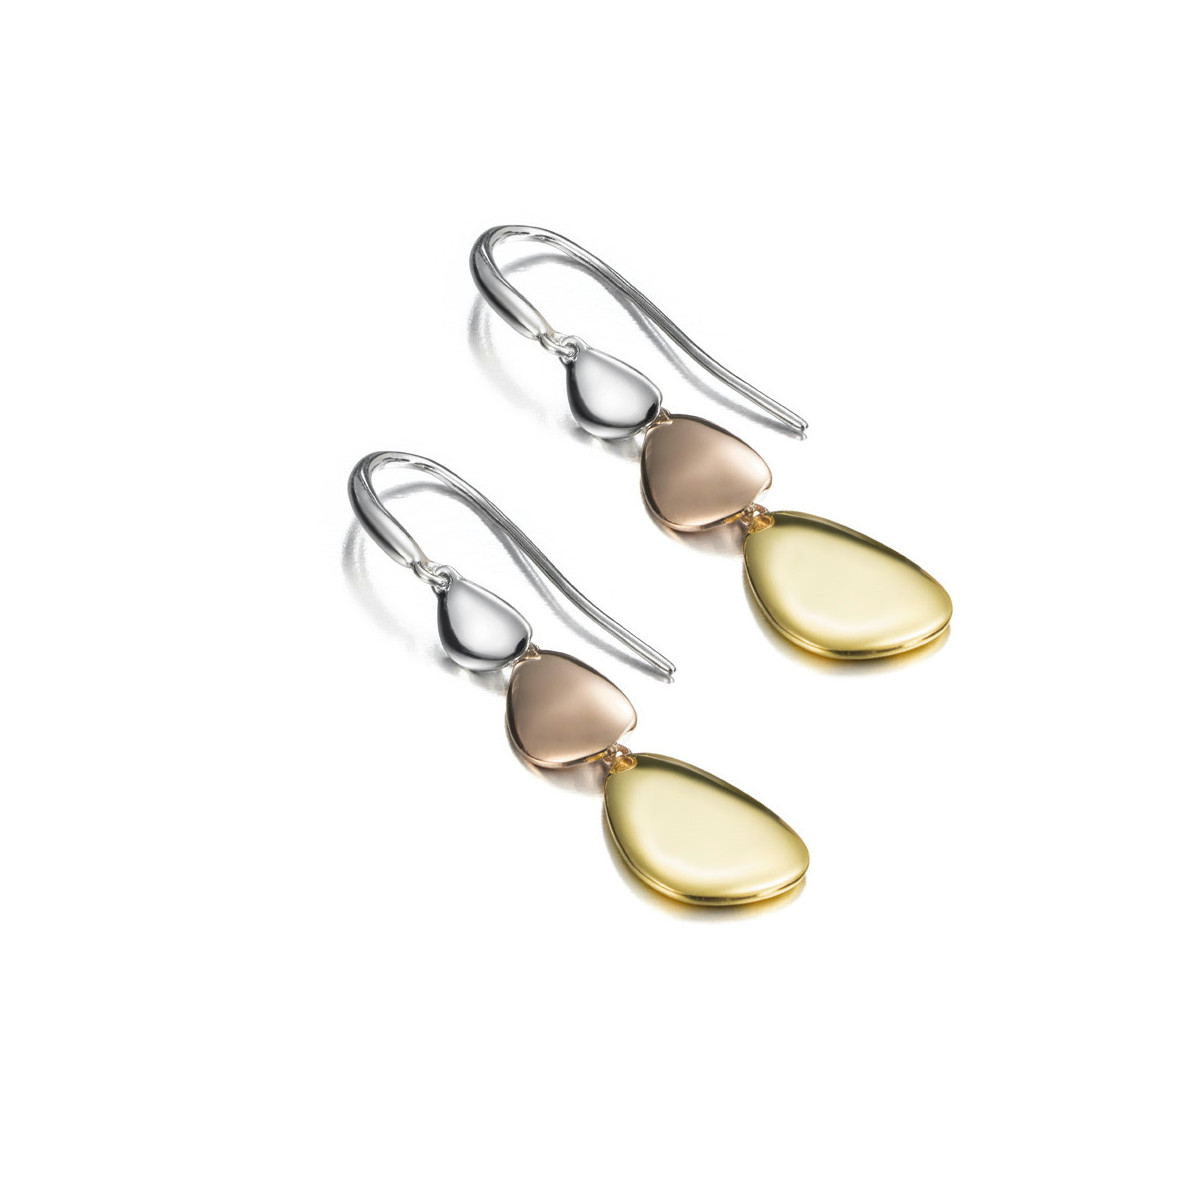 MERCURY Earrings in SILVER. 18k GOLD Vermeil